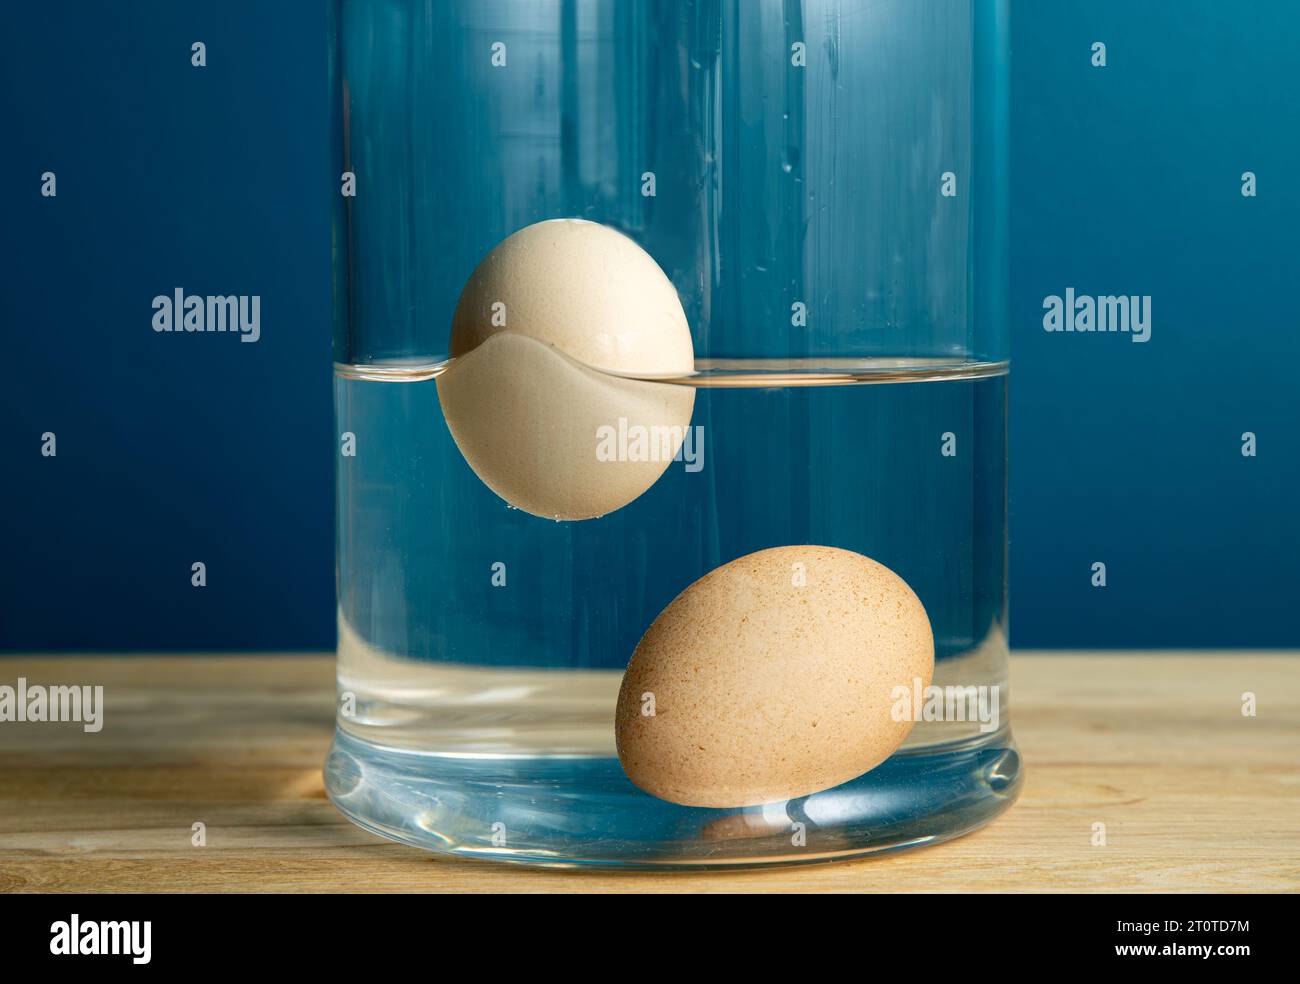 Vergleich mit frischem essbarem und altem verfaultem Ei. Frisches eßbares Hühnerei ist unten im Glasgefäß versunken und schlechtes altes verfaultes Ei schwimmt. Stockfoto